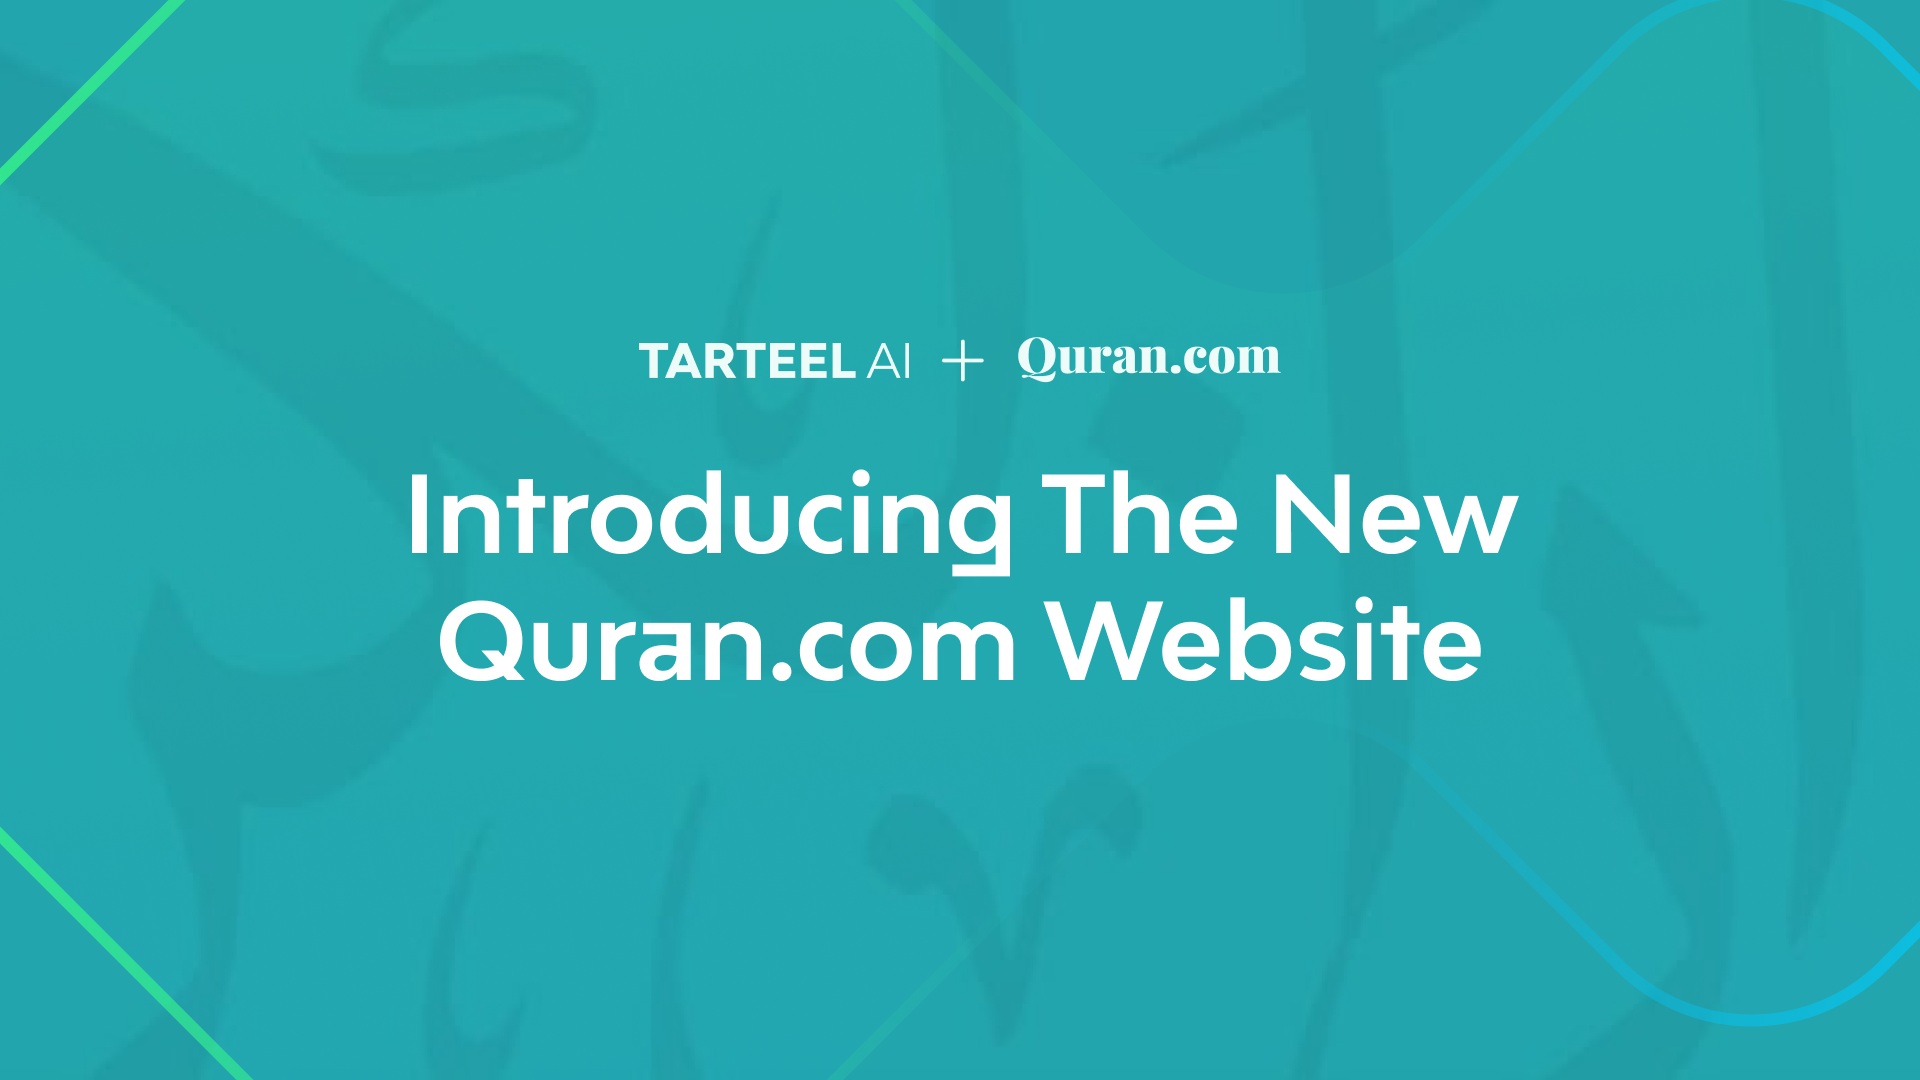 Introducing the New Quran.com